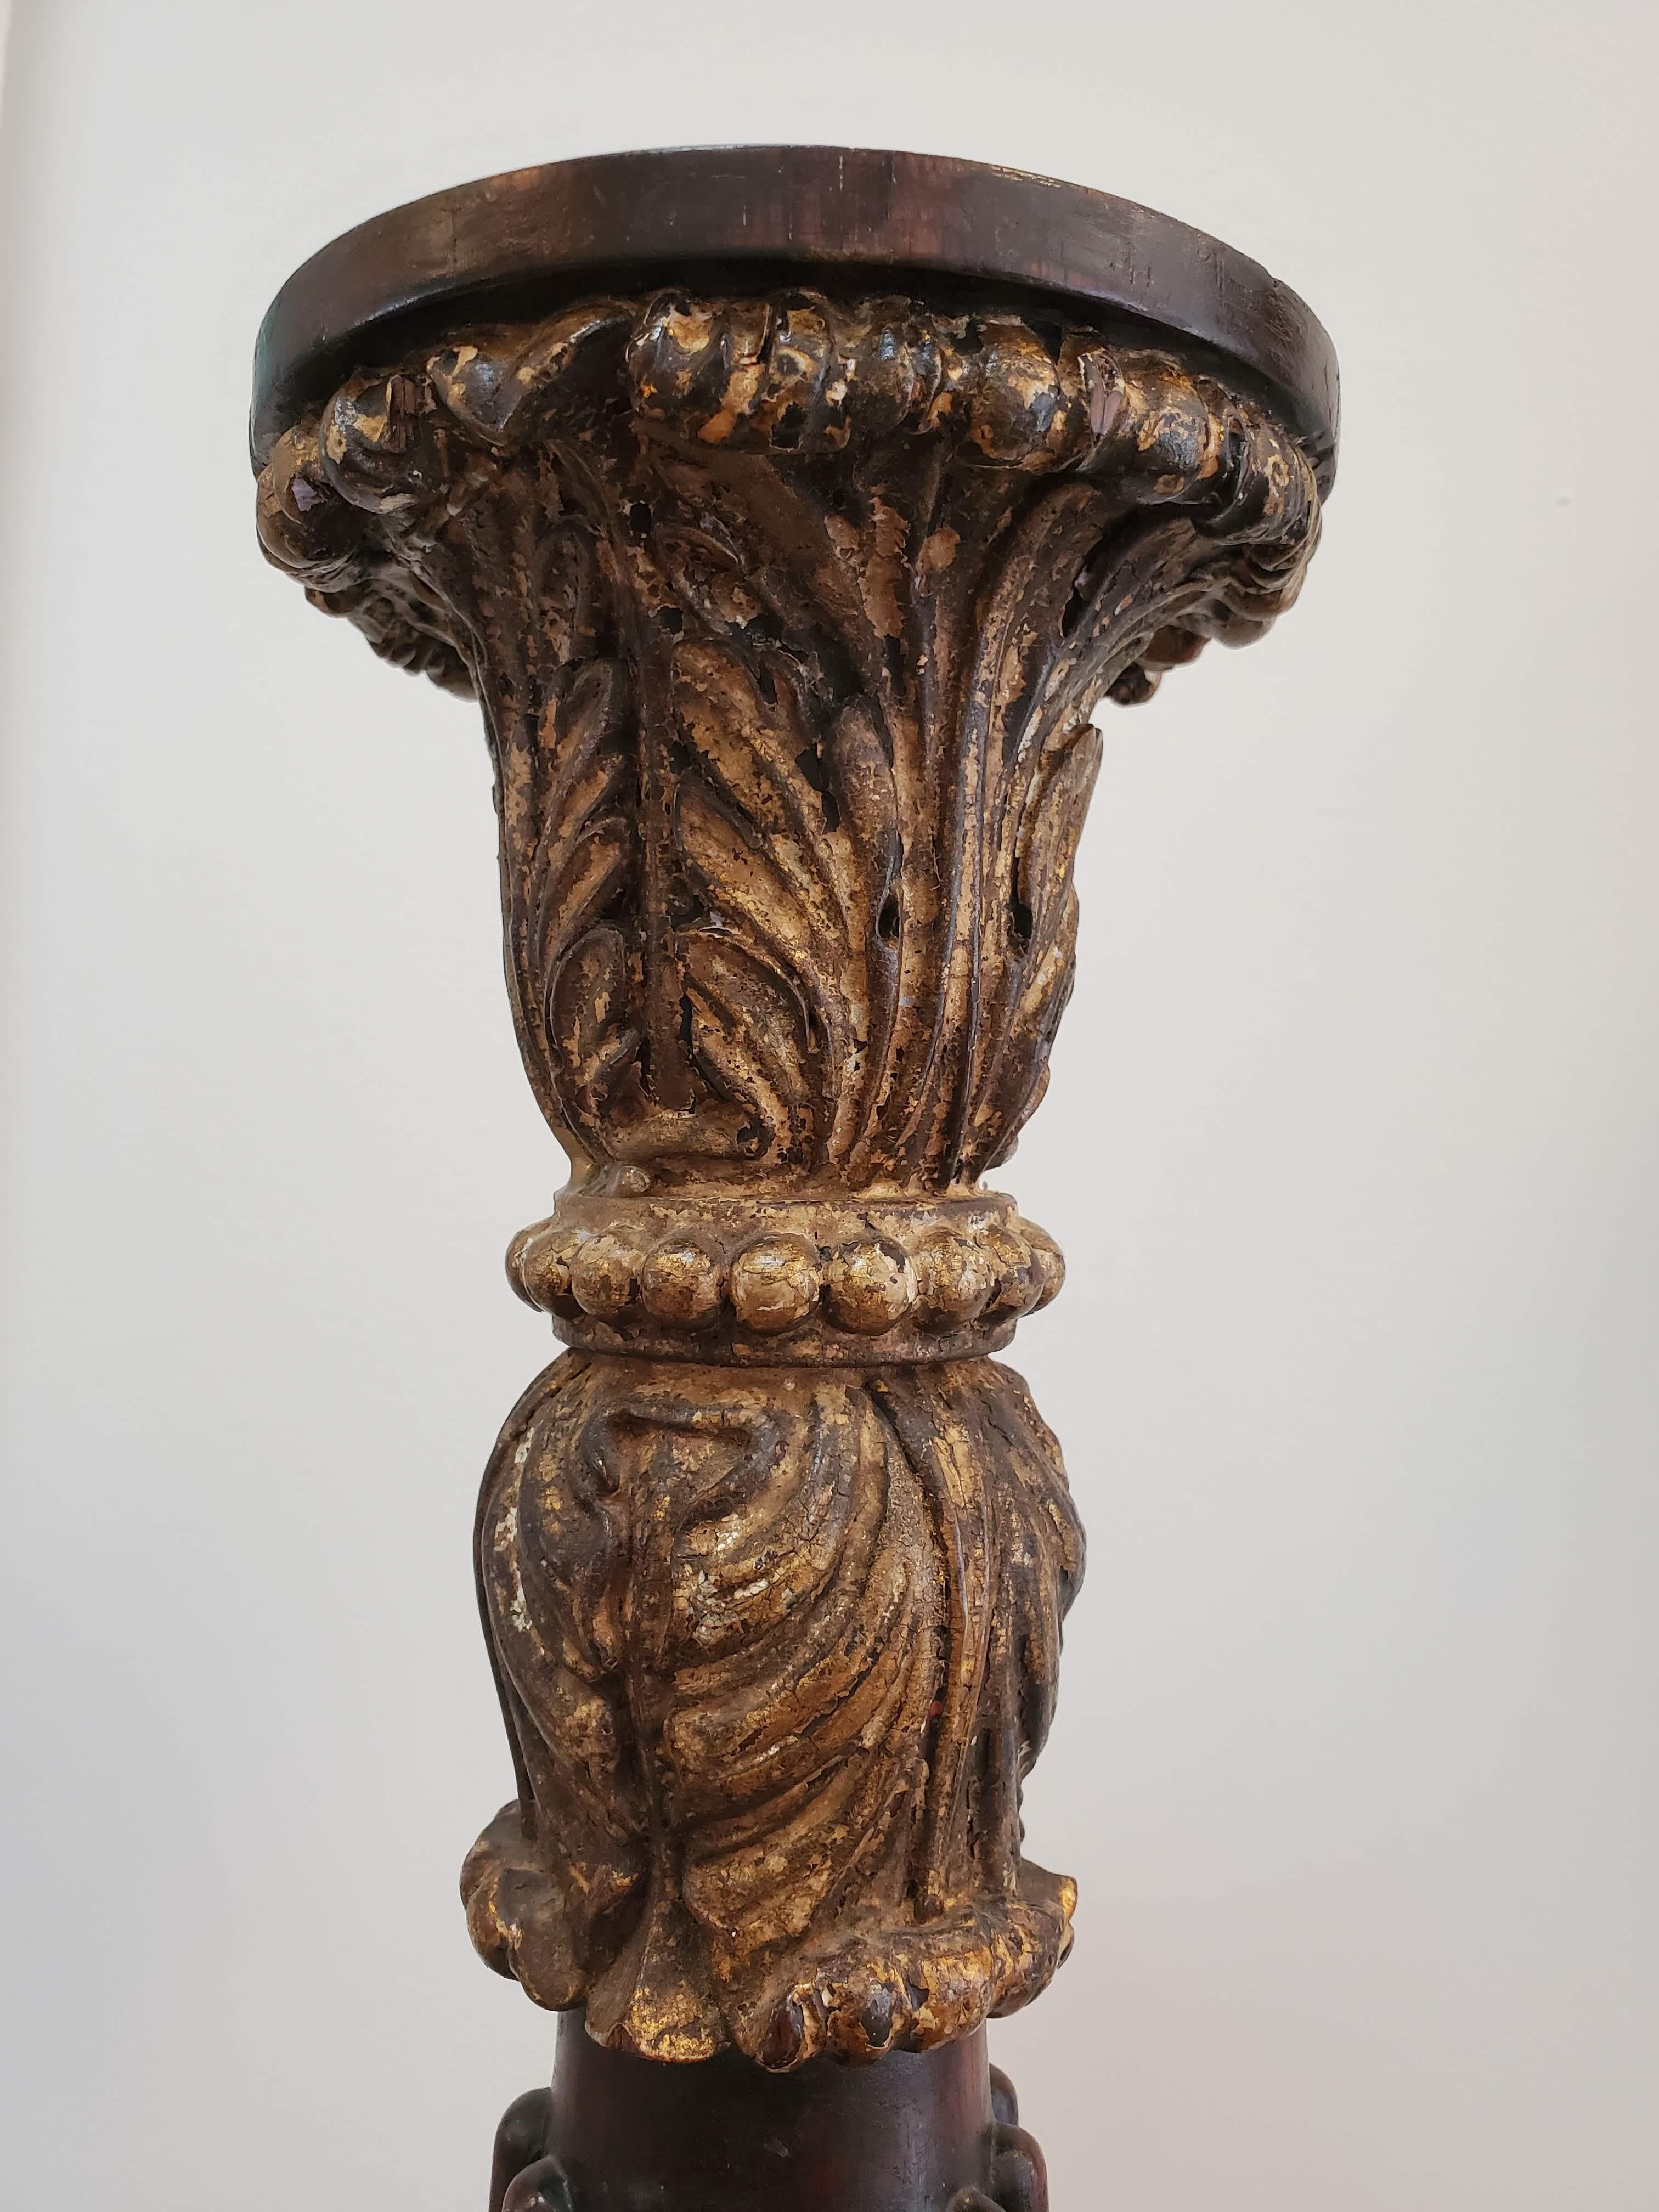 englische Säule aus kubanischem Mahagoni aus dem 18. Jahrhundert mit dekorativen Einfassungen und aufwändig geschnitztem Kapitell. Der Sockel behält die ursprüngliche Wasservergoldung.
England, um 1740
Maße: 32.5